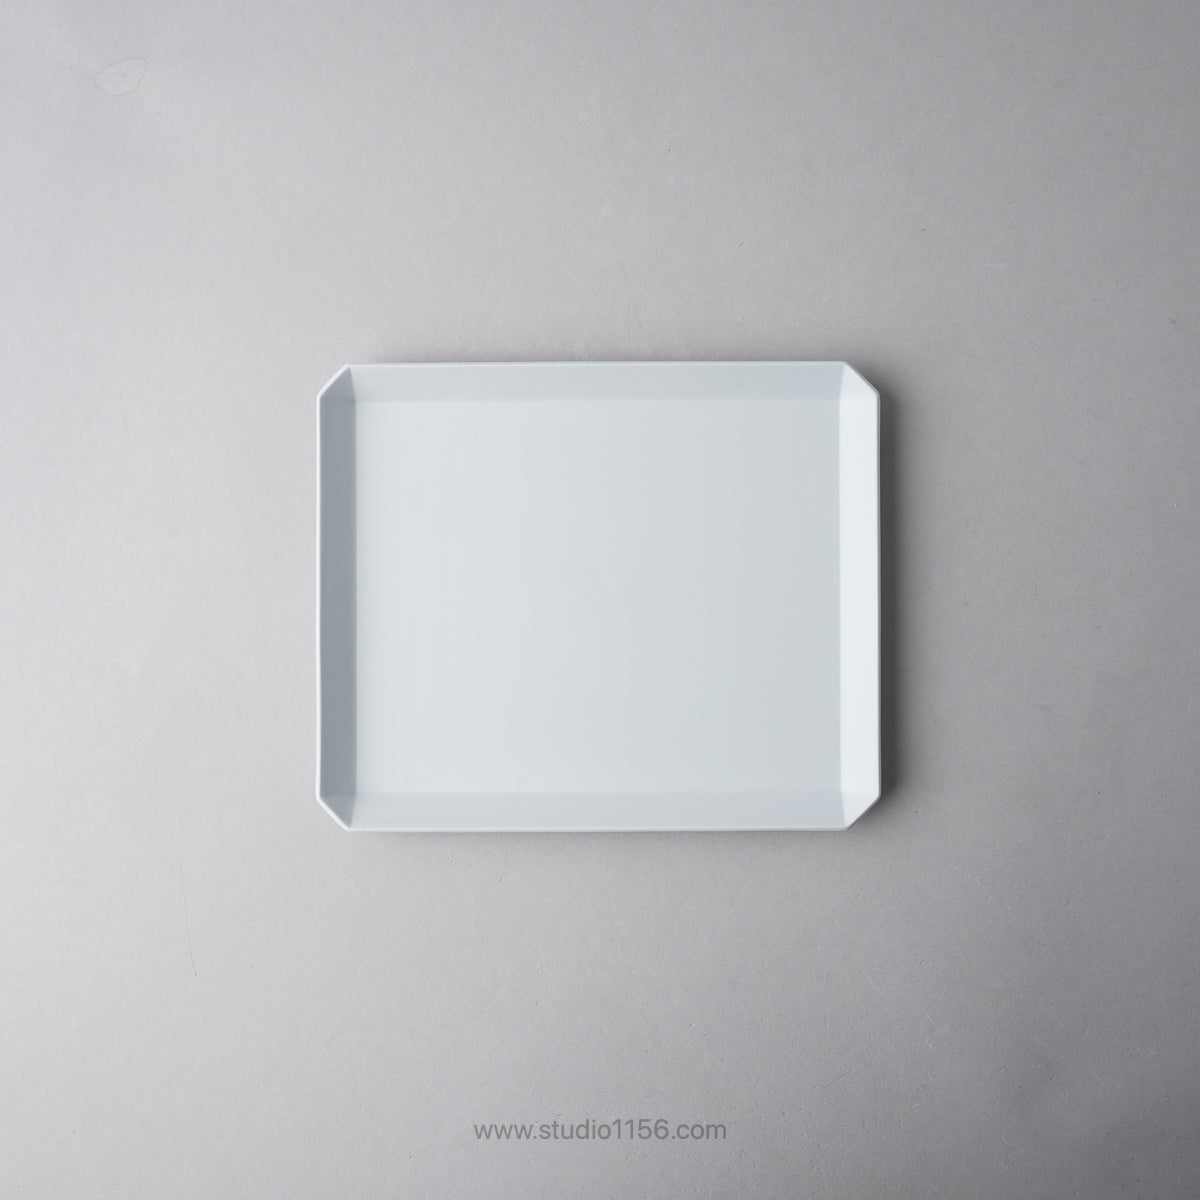 有田焼 スクエアプレート プレーン グレー / TY Square Plate Plain Gray 200 1616 / Arita Japan Studio1156